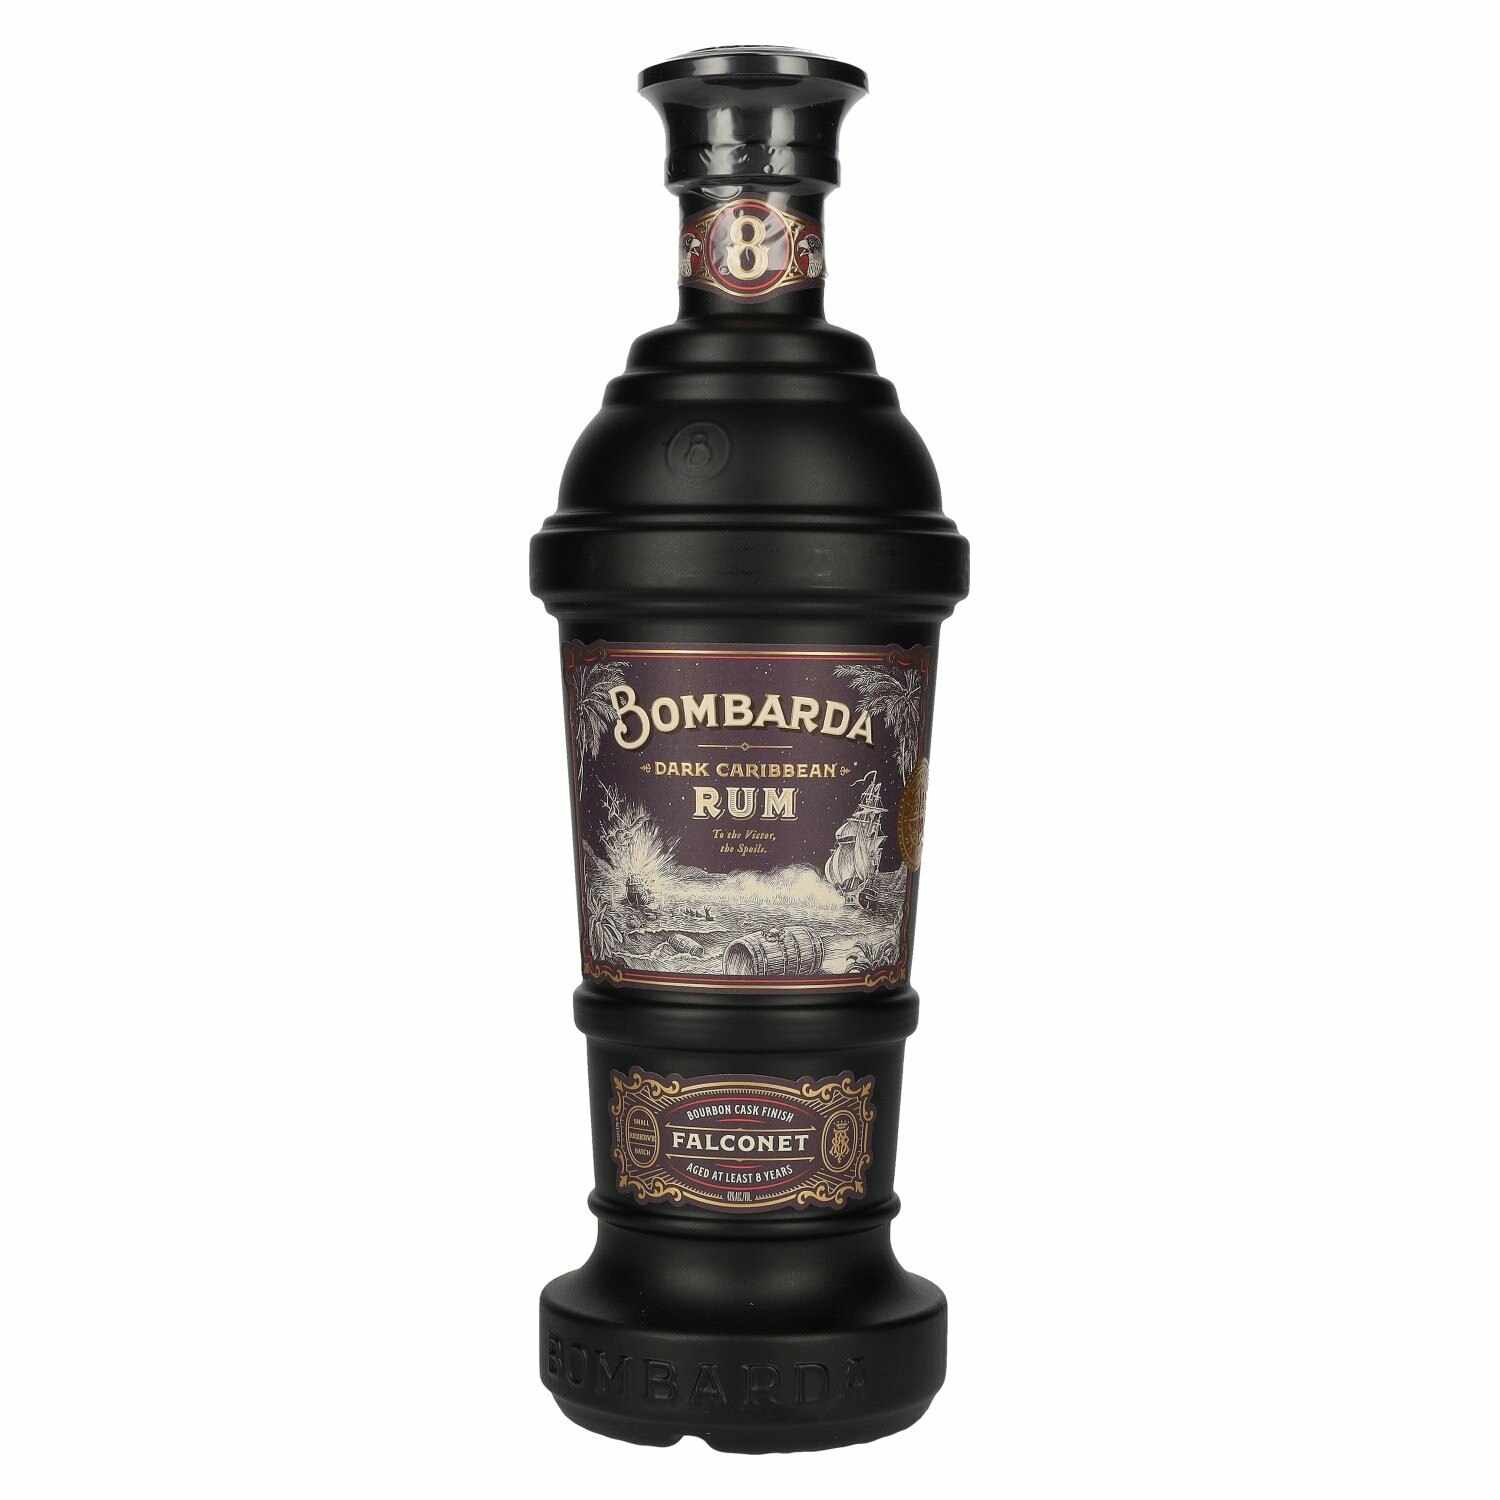 Bombarda FALCONET Dark Caribbean Rum 43% Vol. 0,7l